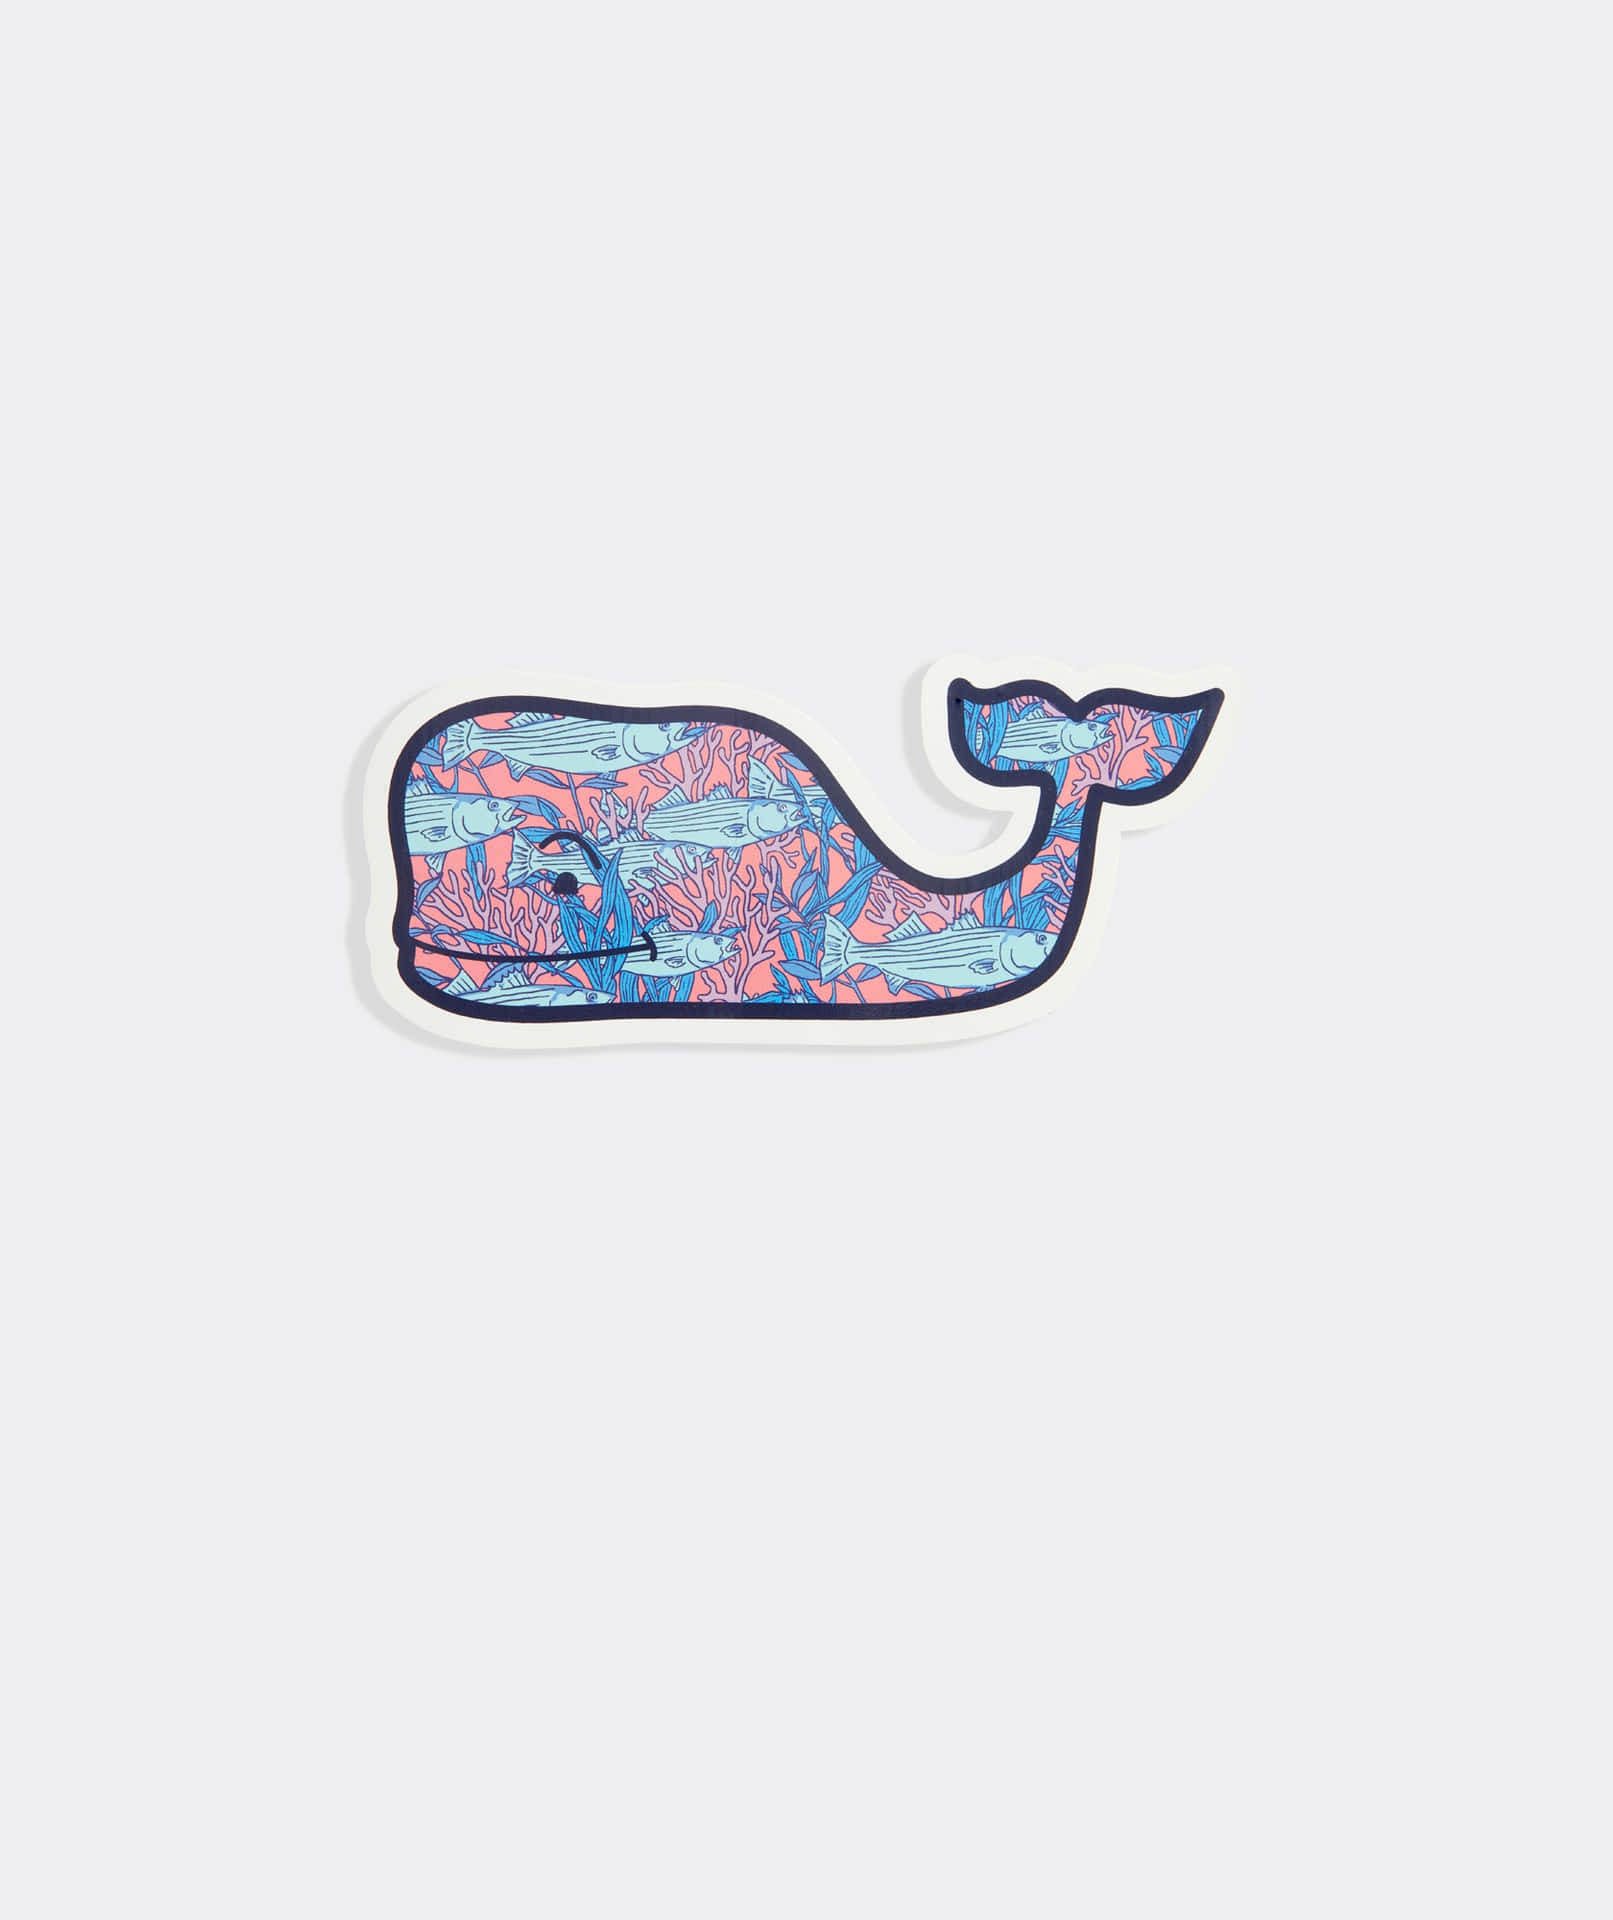 En hval mærkat med lyserøde og blå designs Wallpaper